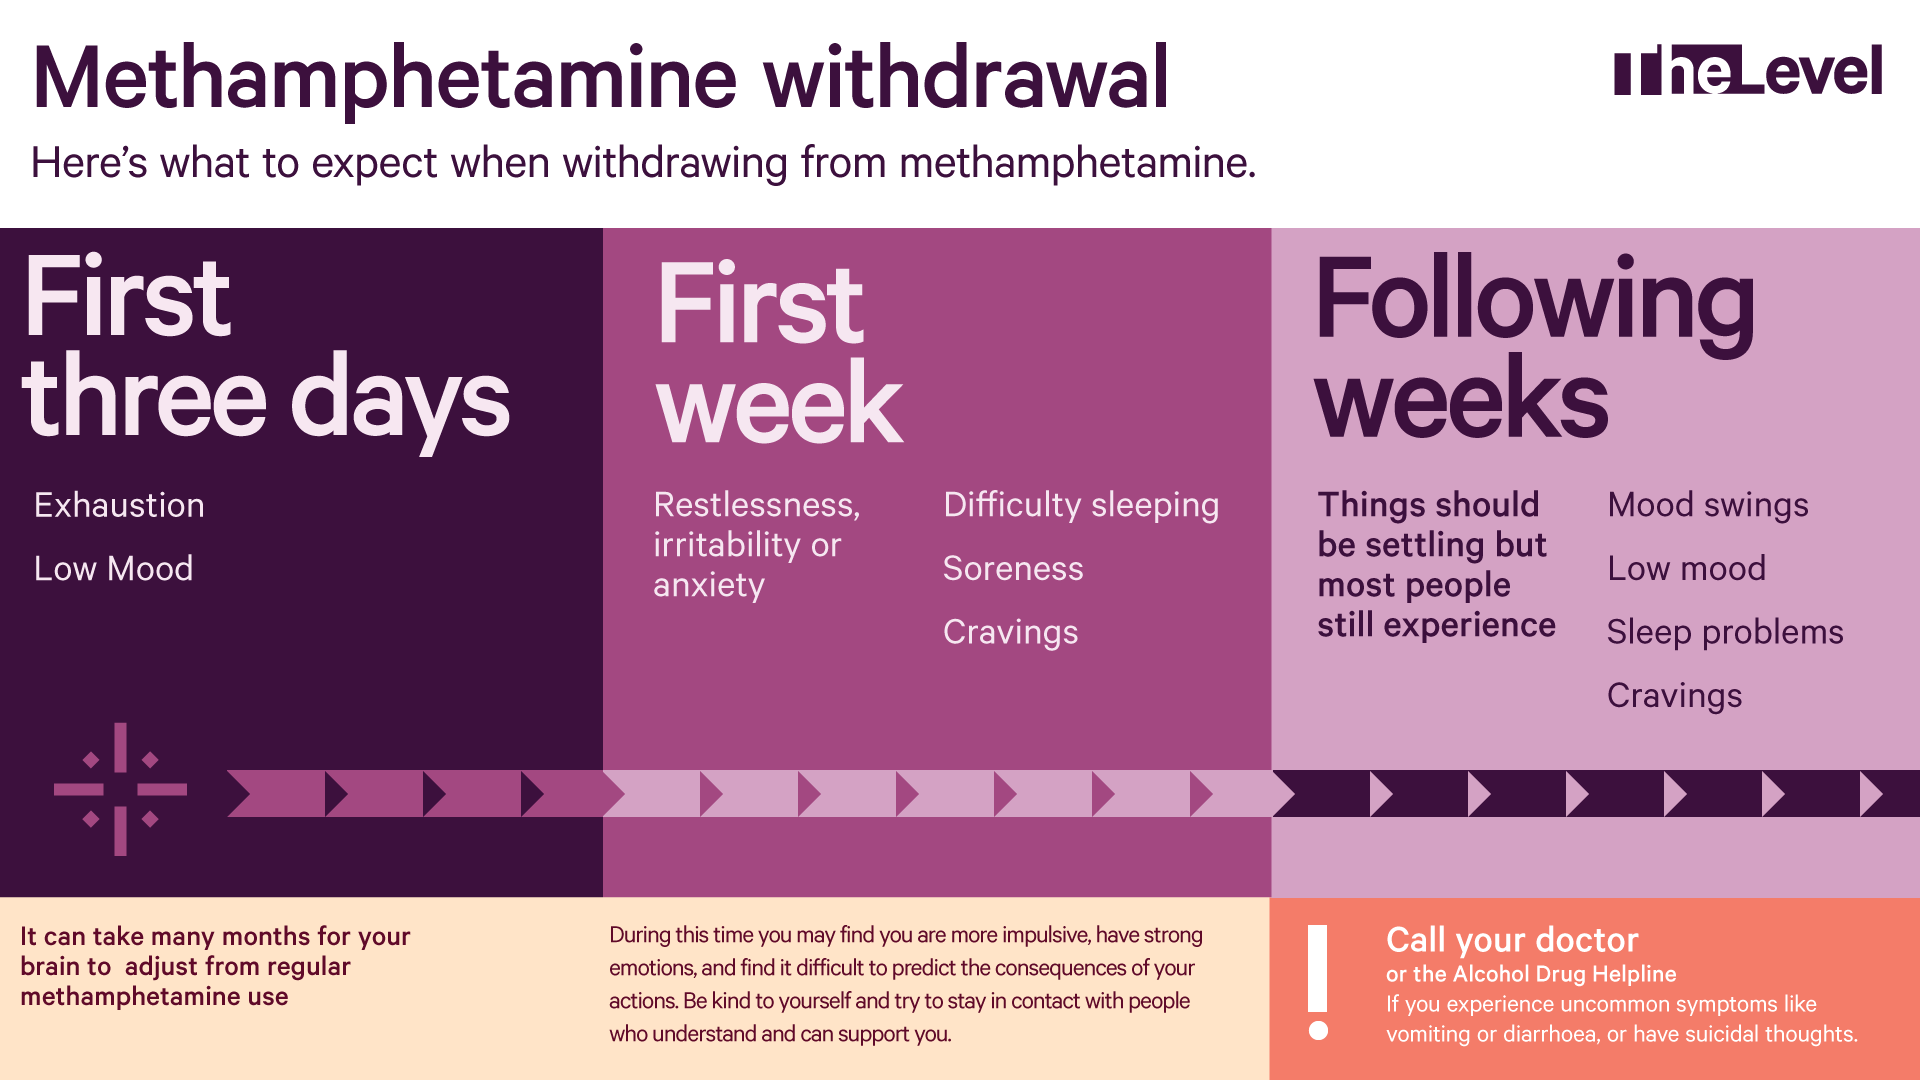 Methamphetamine - The Level